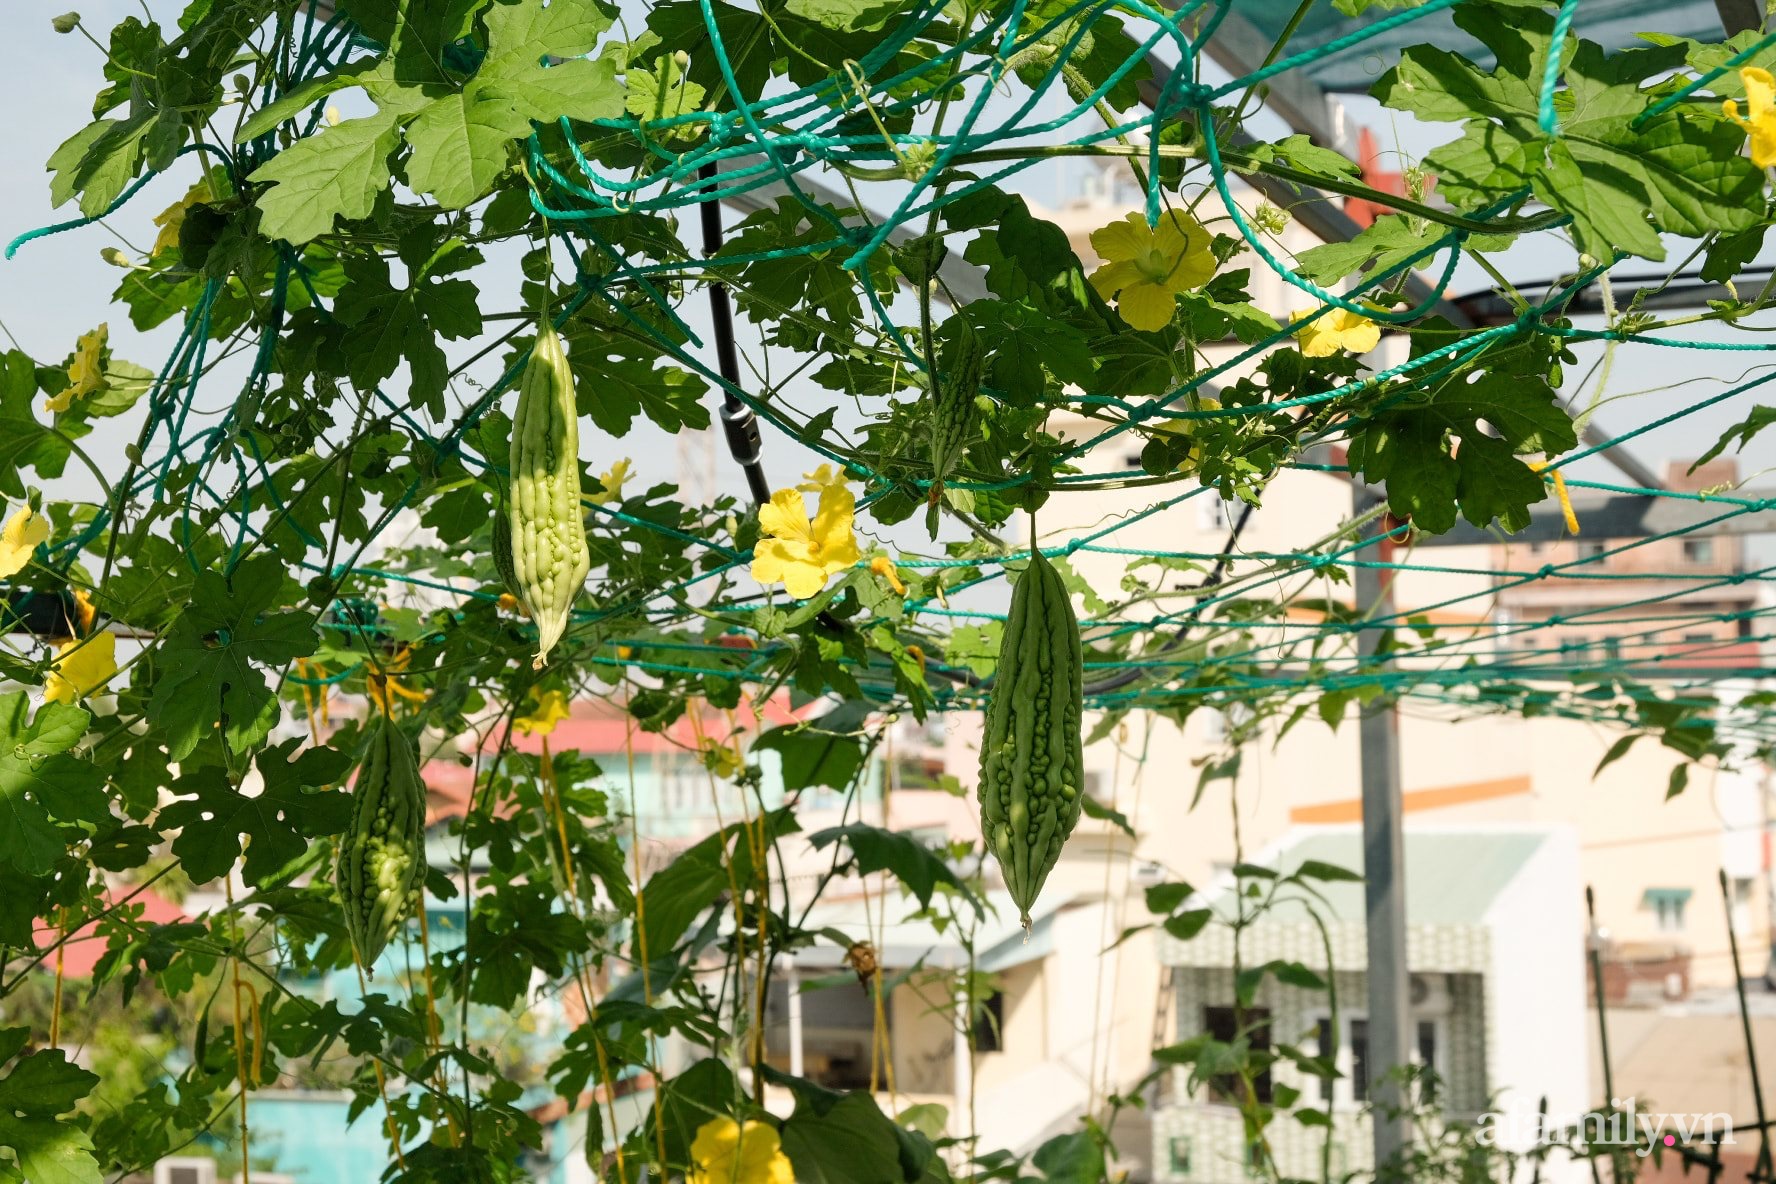 Bí quyết dễ học để tạo góc vườn xanh mát mắt đủ loại rau quả sạch của mẹ 3 con ở Sài Gòn - Ảnh 13.